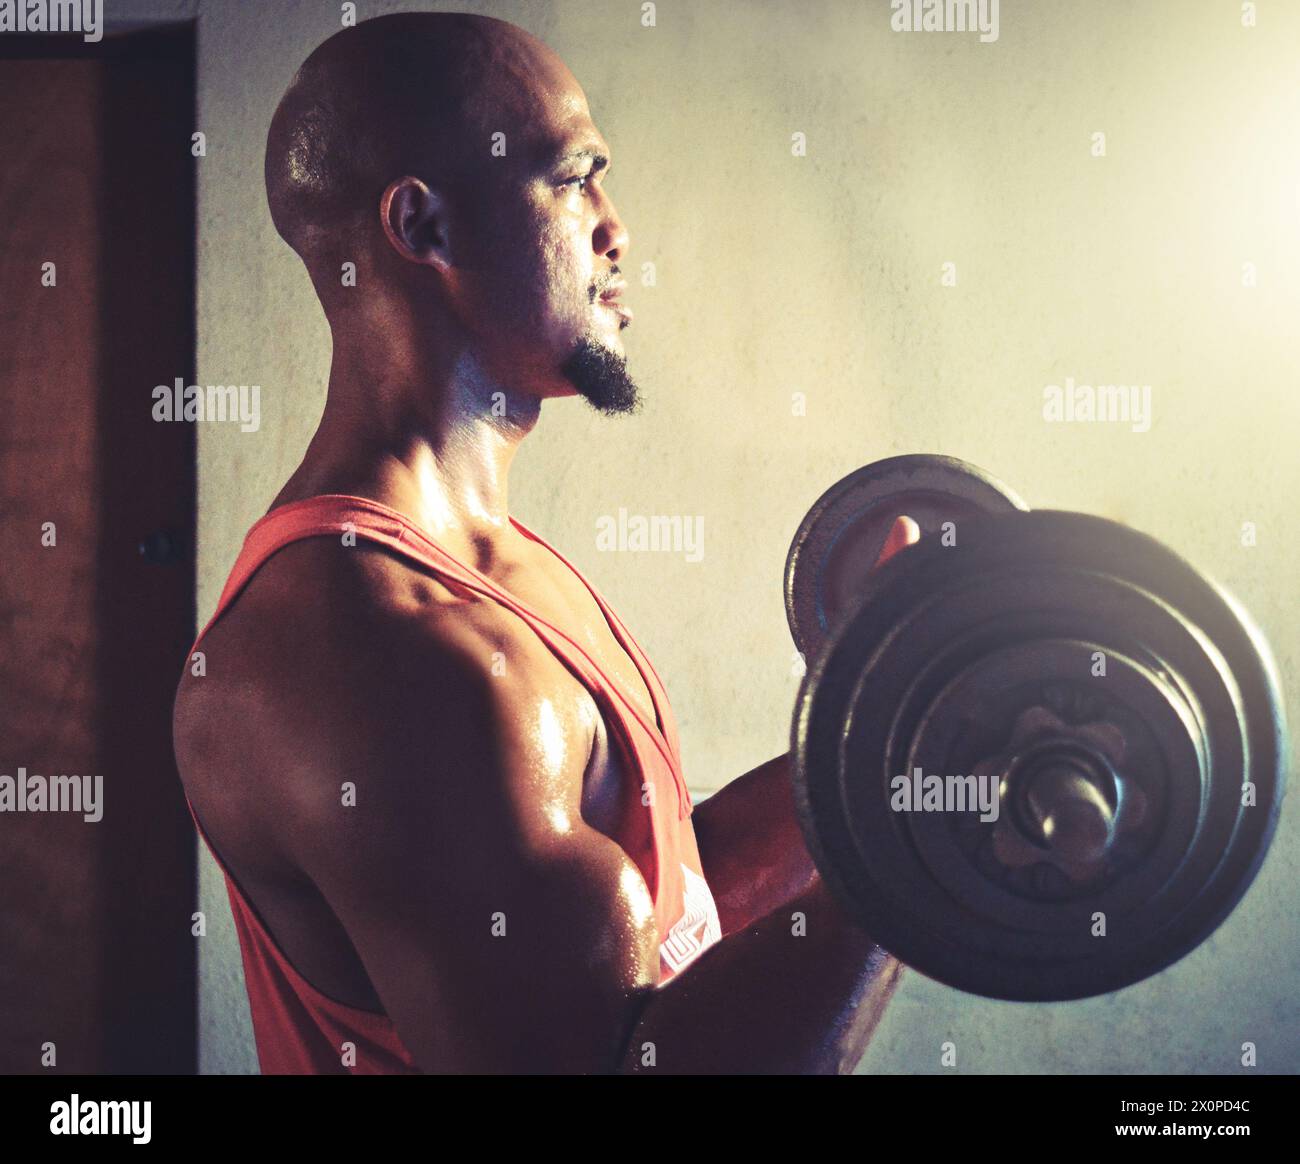 Uomo, bicipite e sollevamento pesi in palestra per la potenza, l'esercizio fisico e l'allenamento per muscoli forti del braccio. Persona maschile nera, profilo e atleta per fitness e. Foto Stock